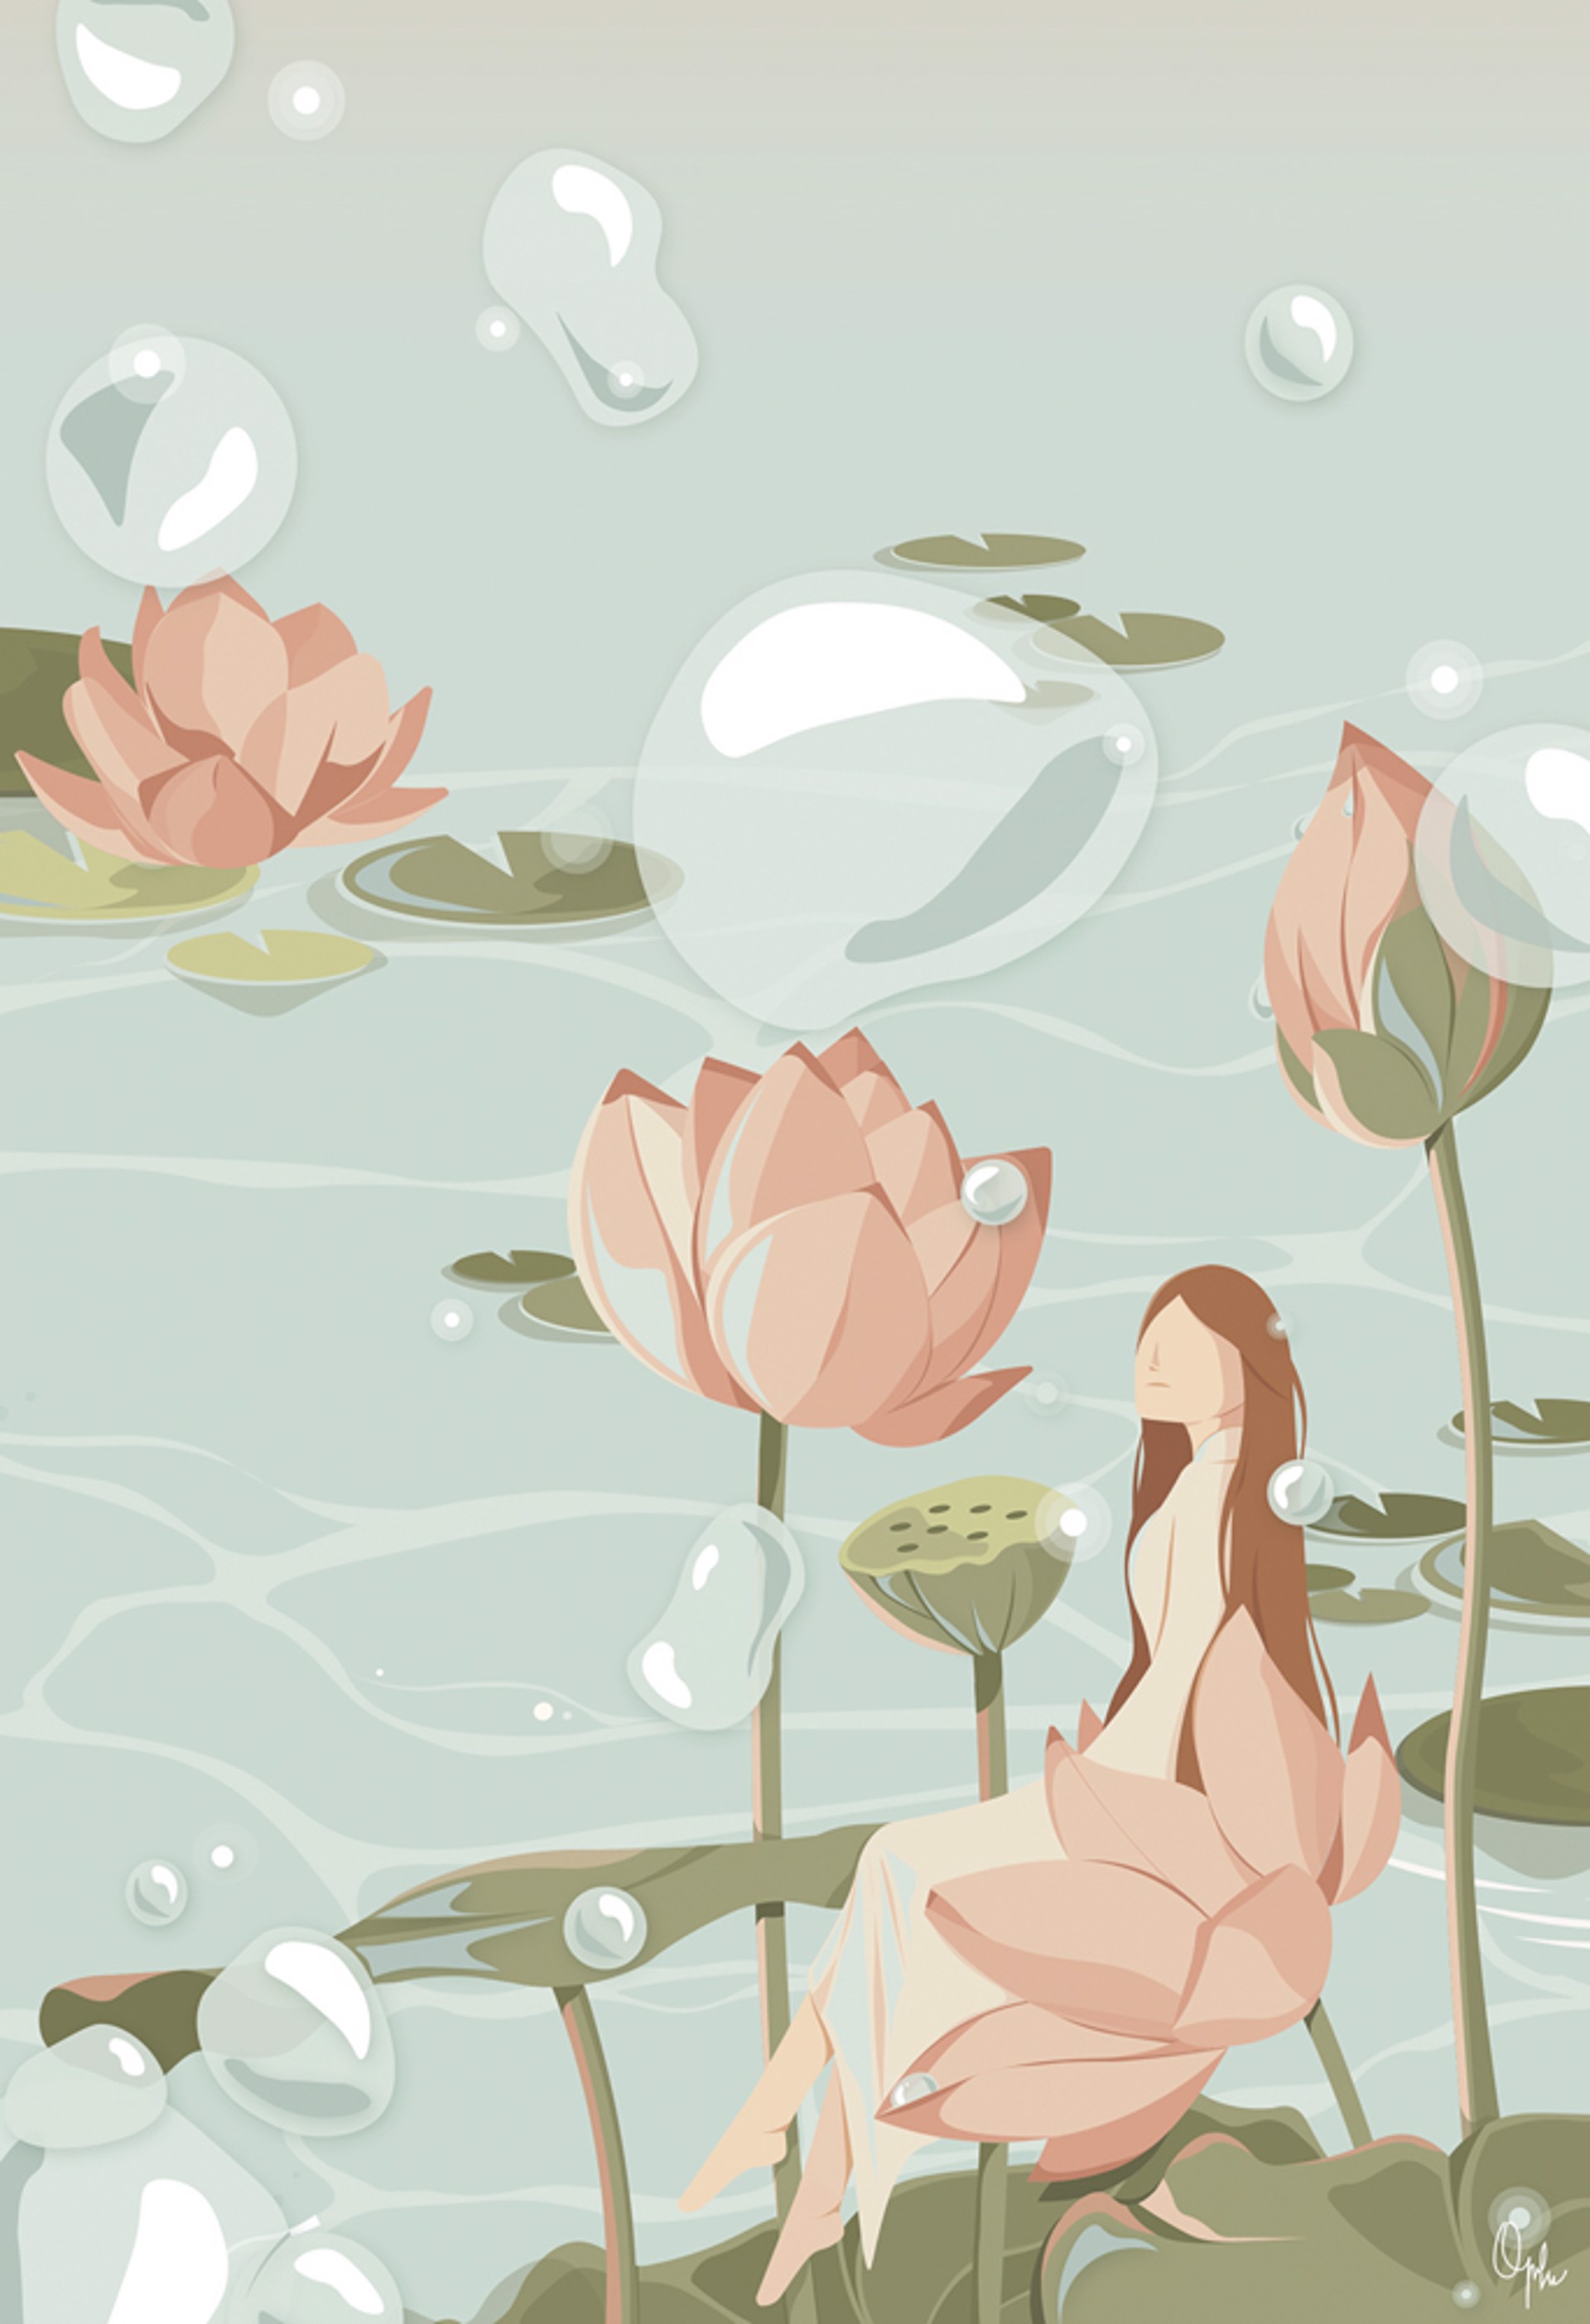 Lotus by Chi Quach